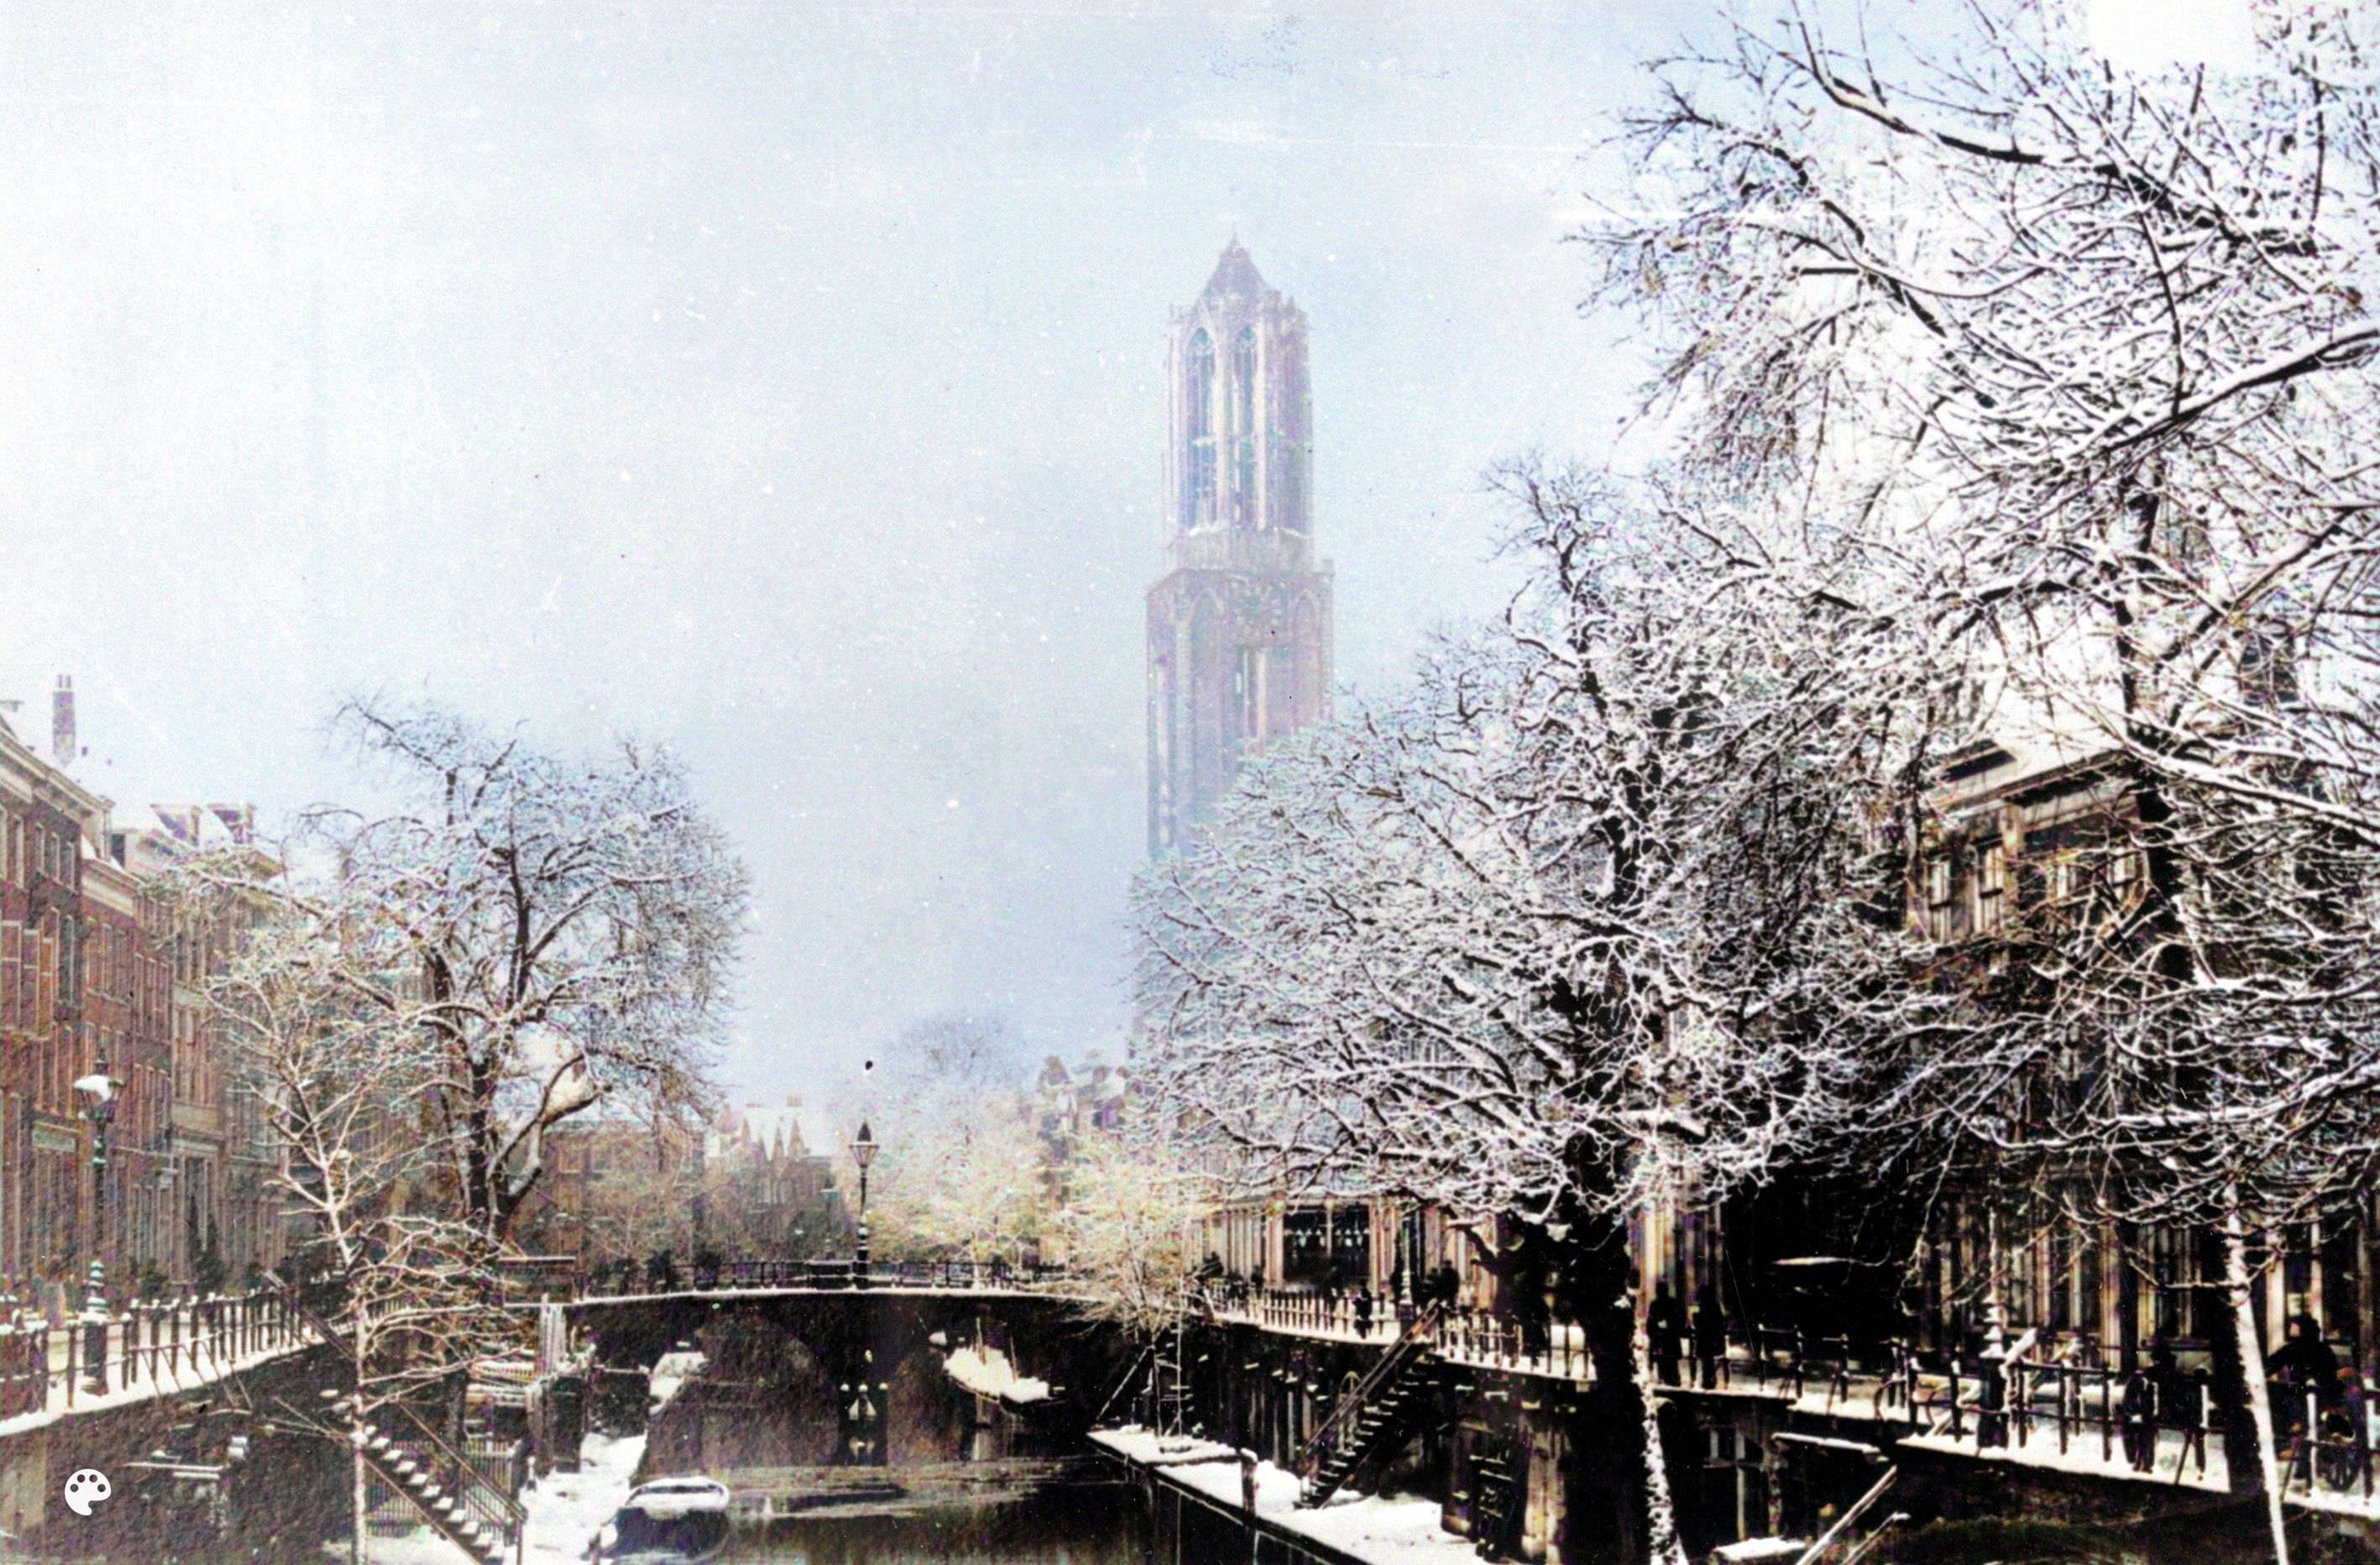 Links: Domtoren in de sneeuw, Utrecht, tussen 1895-1905. Rechts: het resultaat na inkleuren. (bron: collectie Utrechts Archief, publiek domein, vervaardiger onbekend)